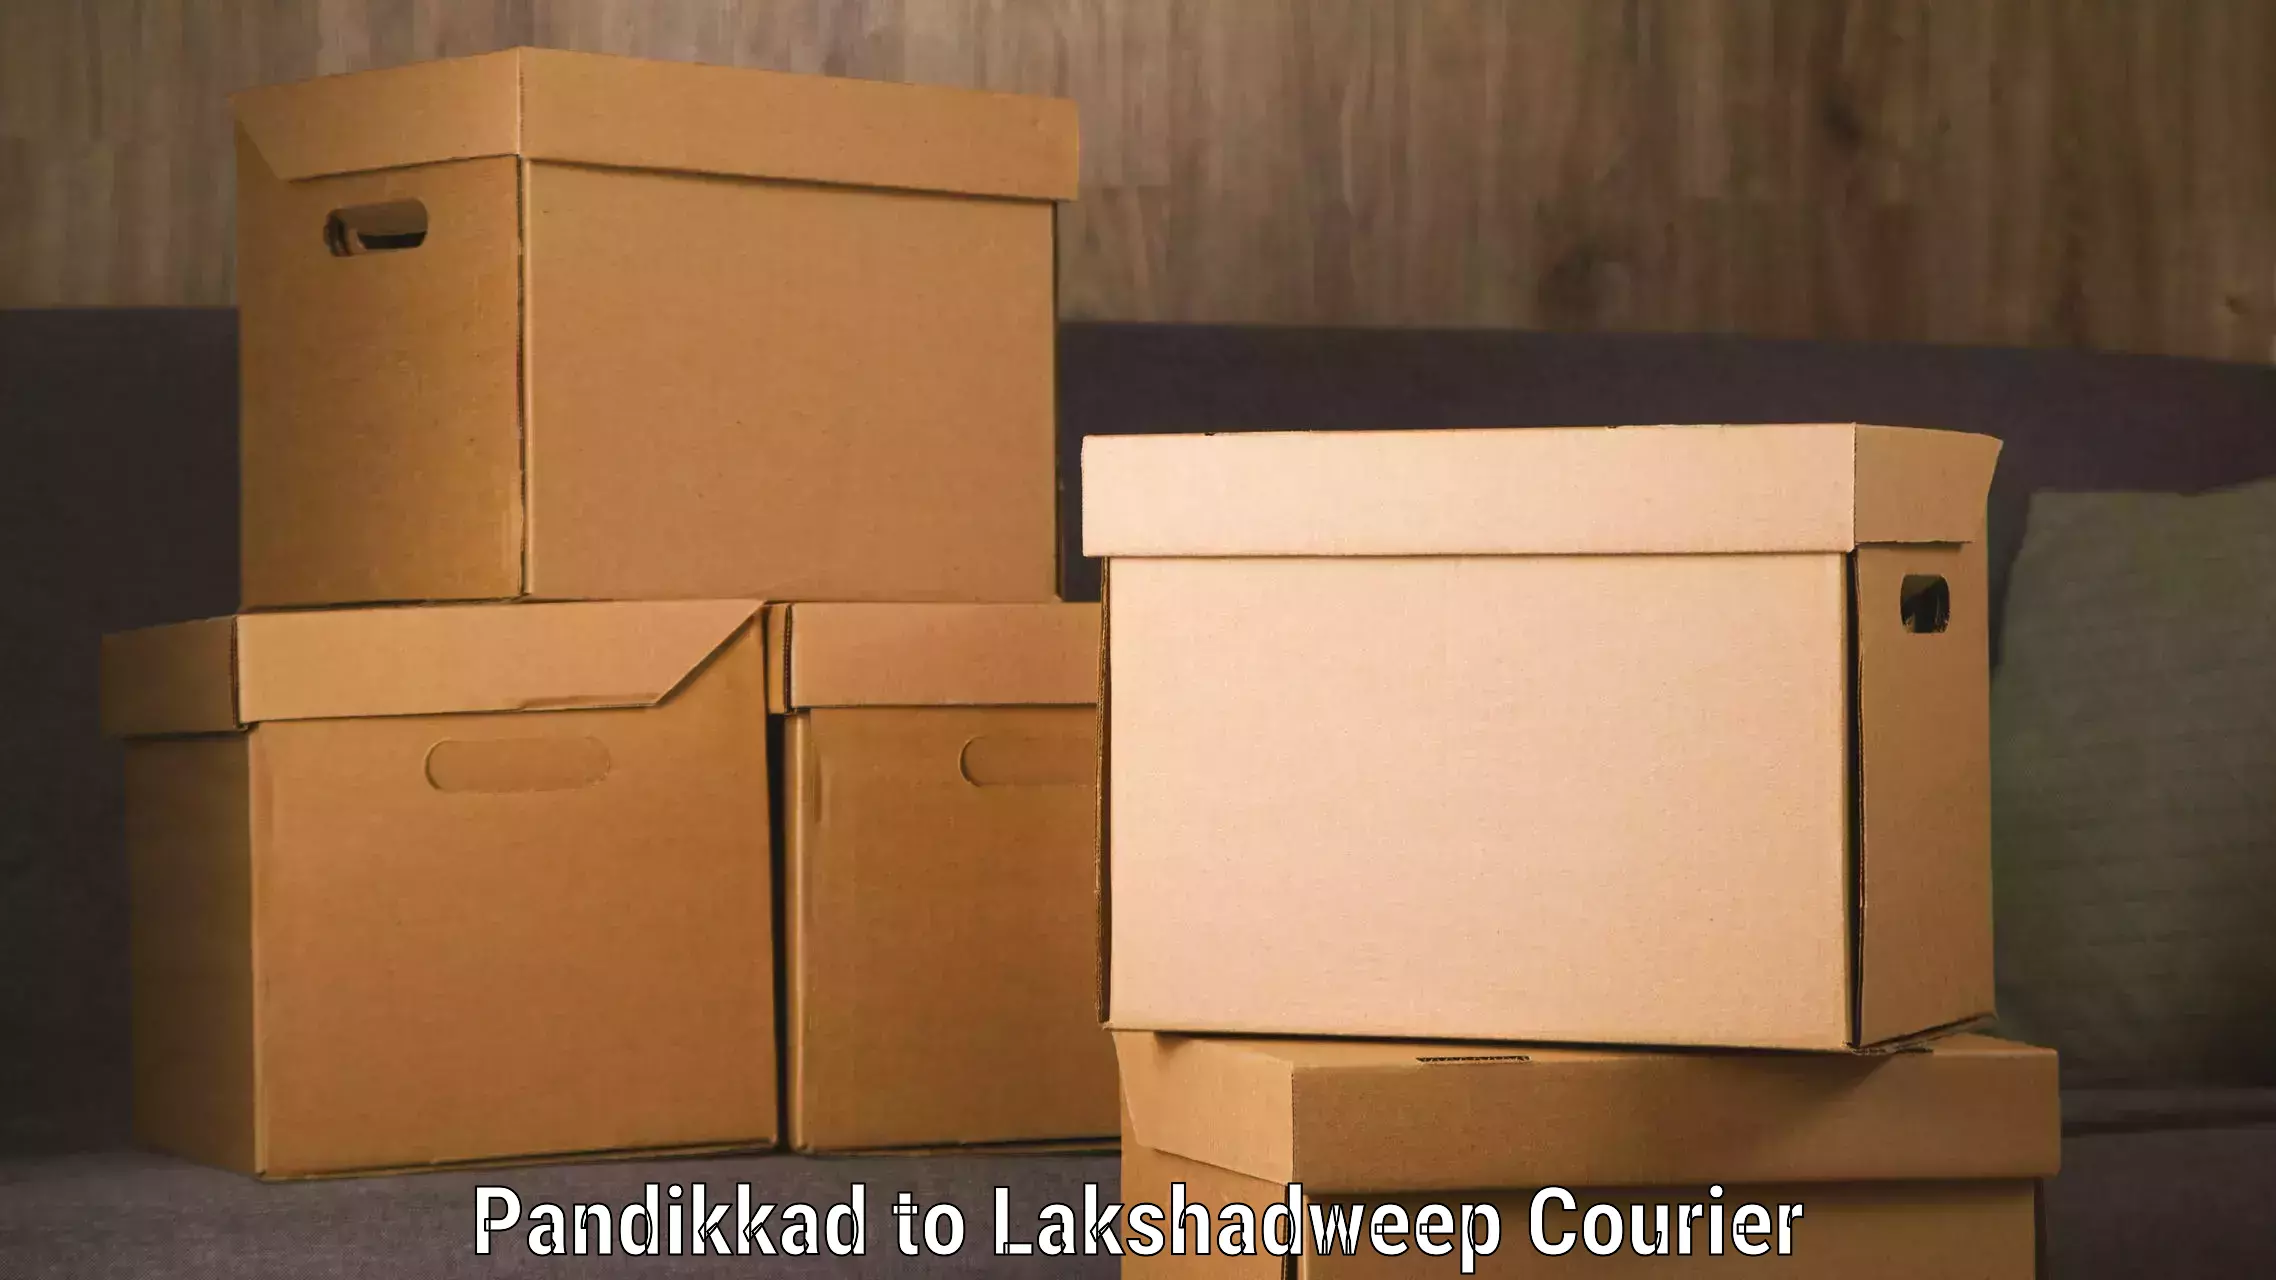 Customer-focused courier in Pandikkad to Lakshadweep